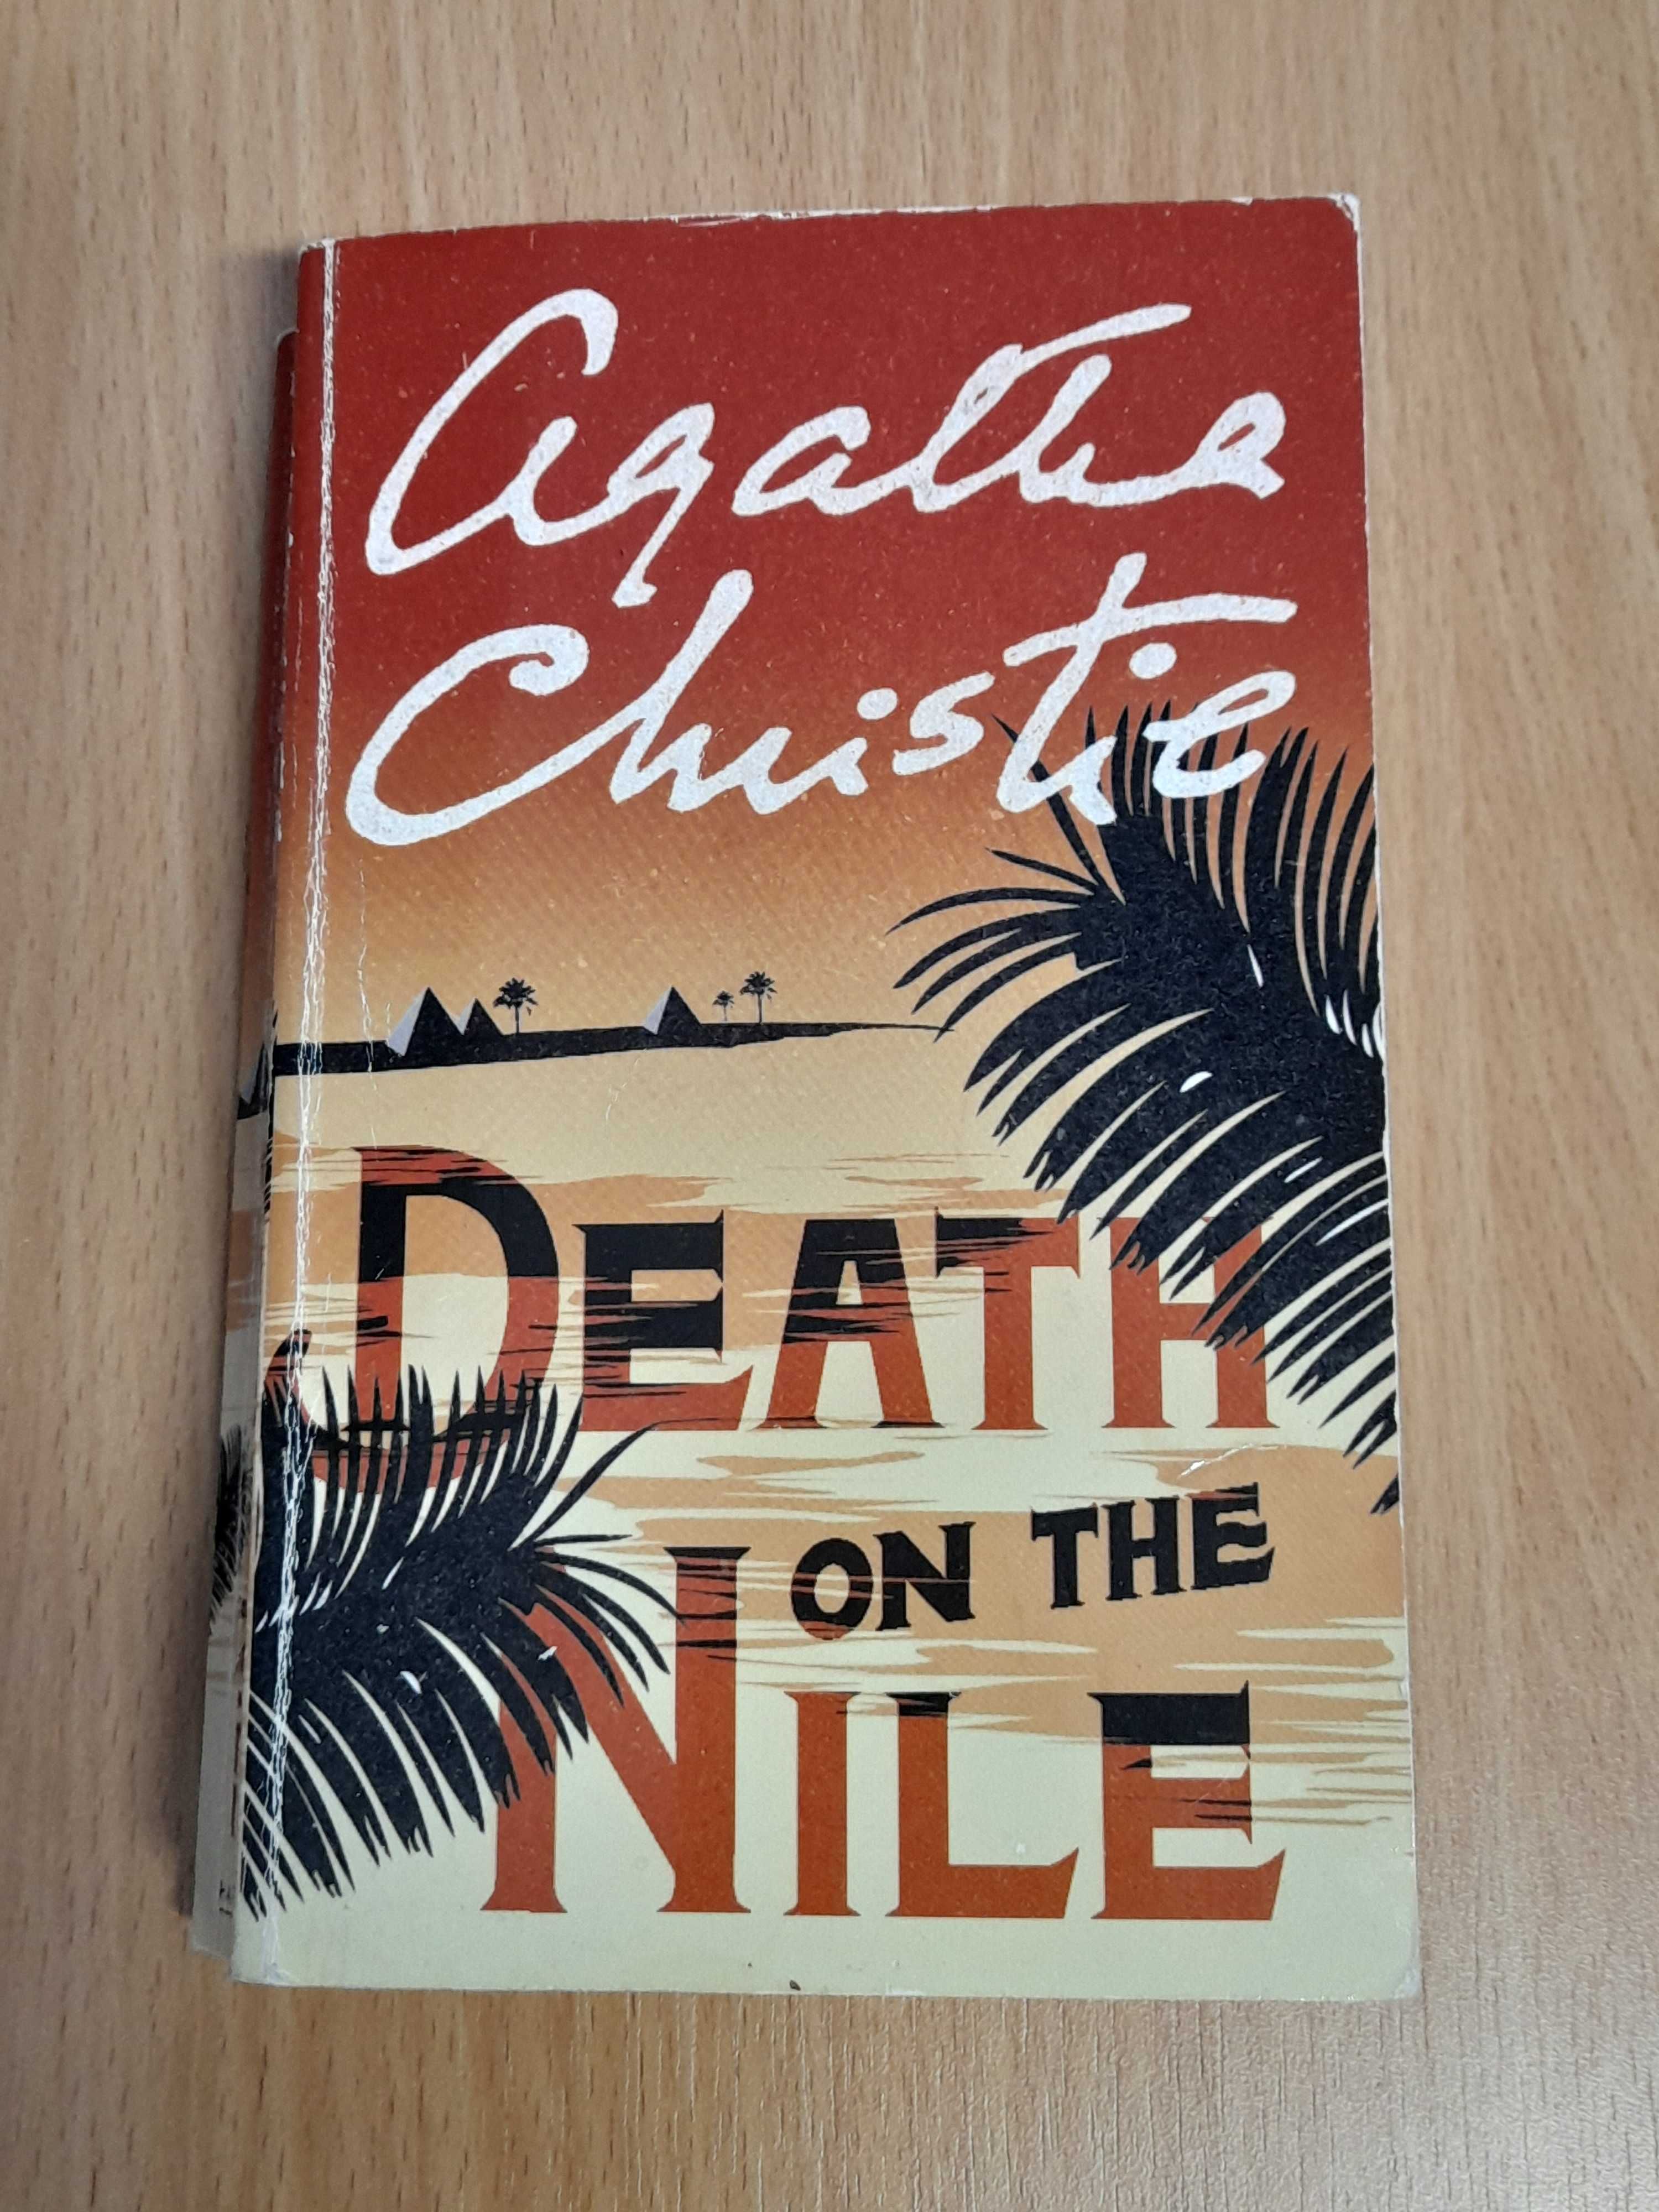 "Death on the Nile", Agatha Christie